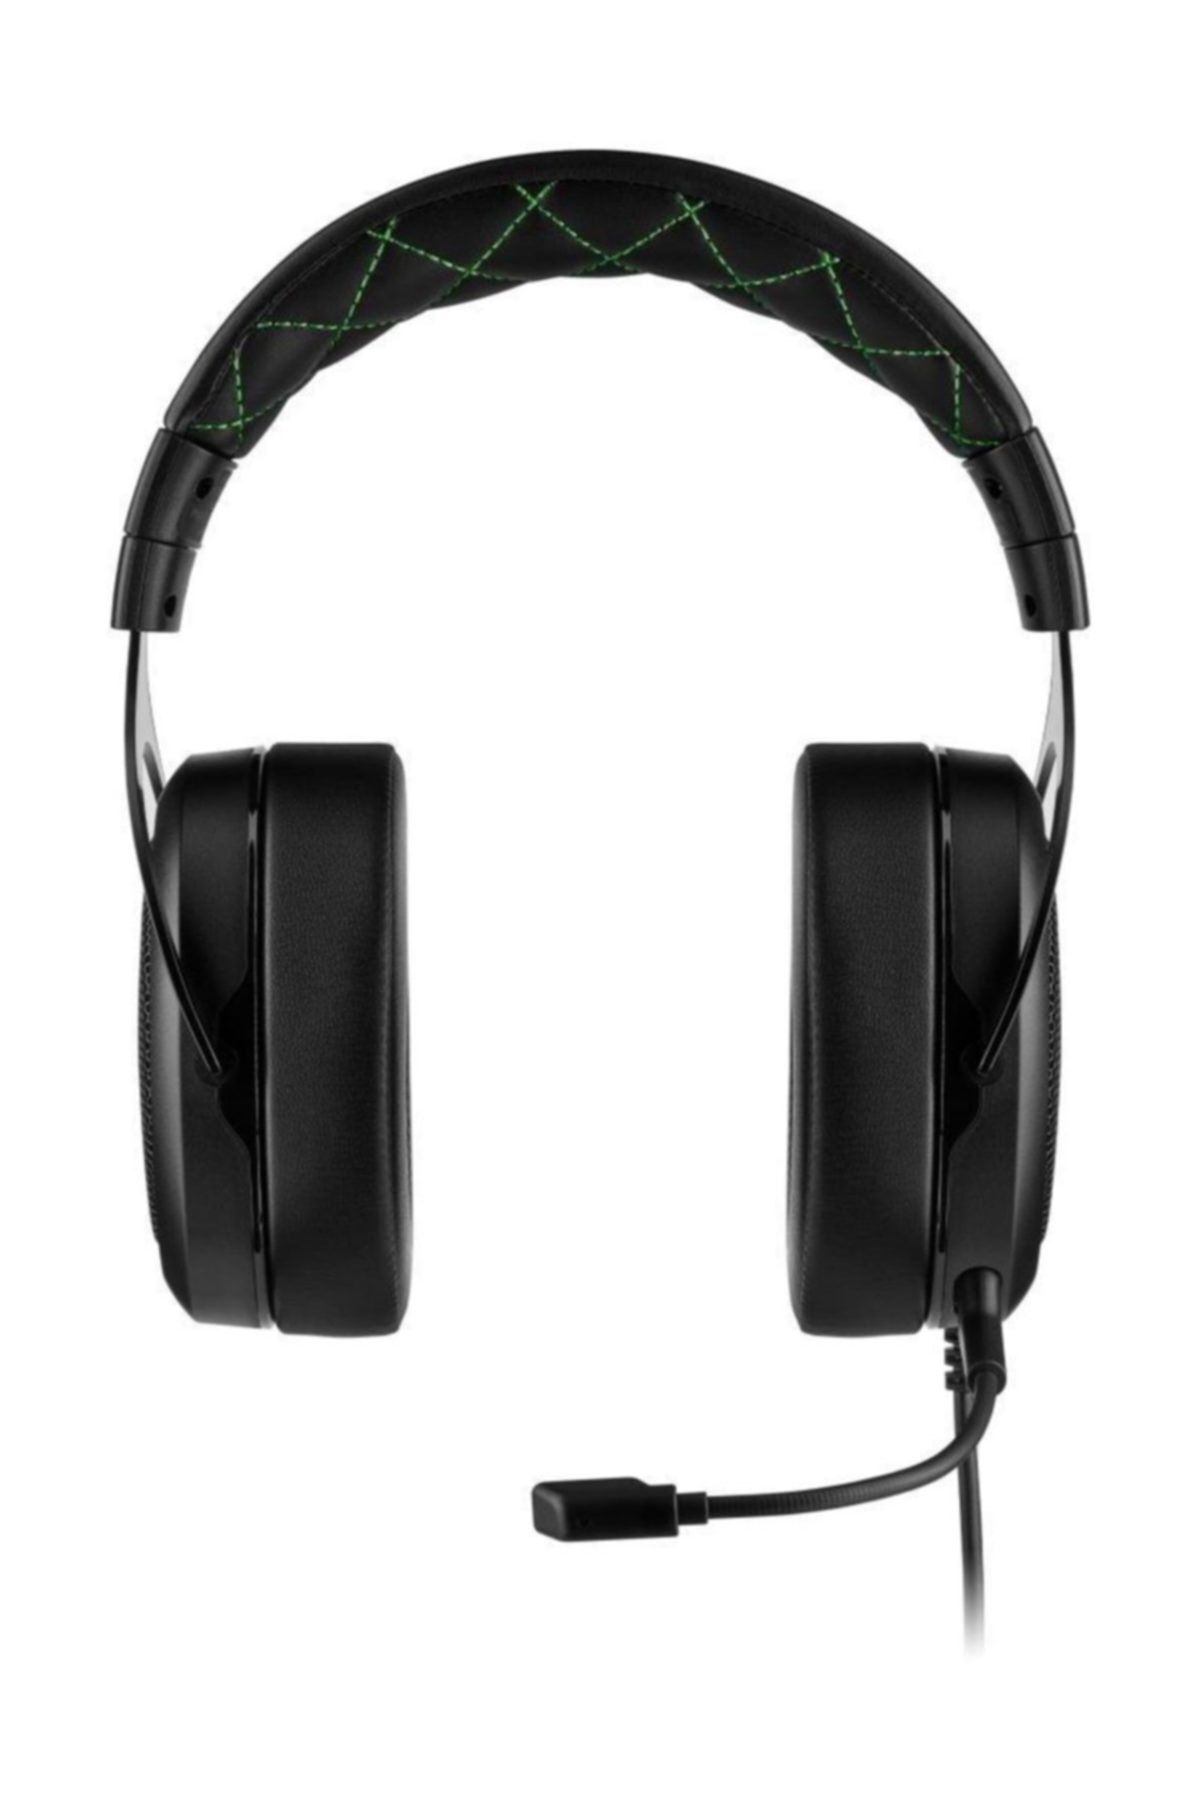 Corsair Hs50 Pro Stereo Oyuncu Kulaklığı-yeşil Ca-9011216-eu